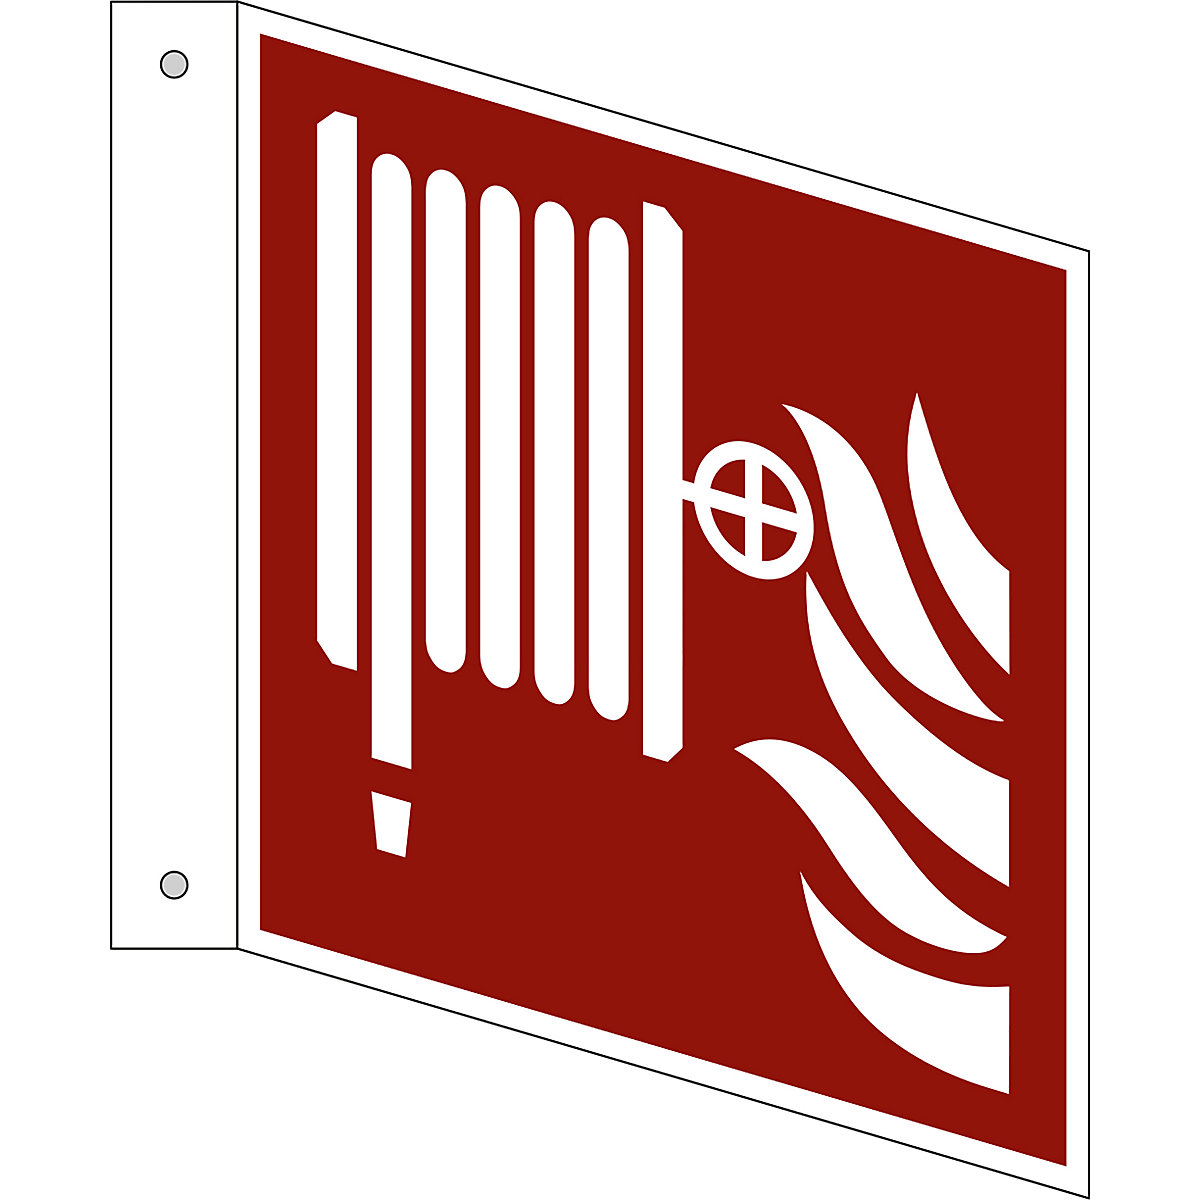 Značka pro ochranu proti požáru, požární hadice, bal.j. 10 ks, hliník, vlajkový štítek, 150 x 150 mm